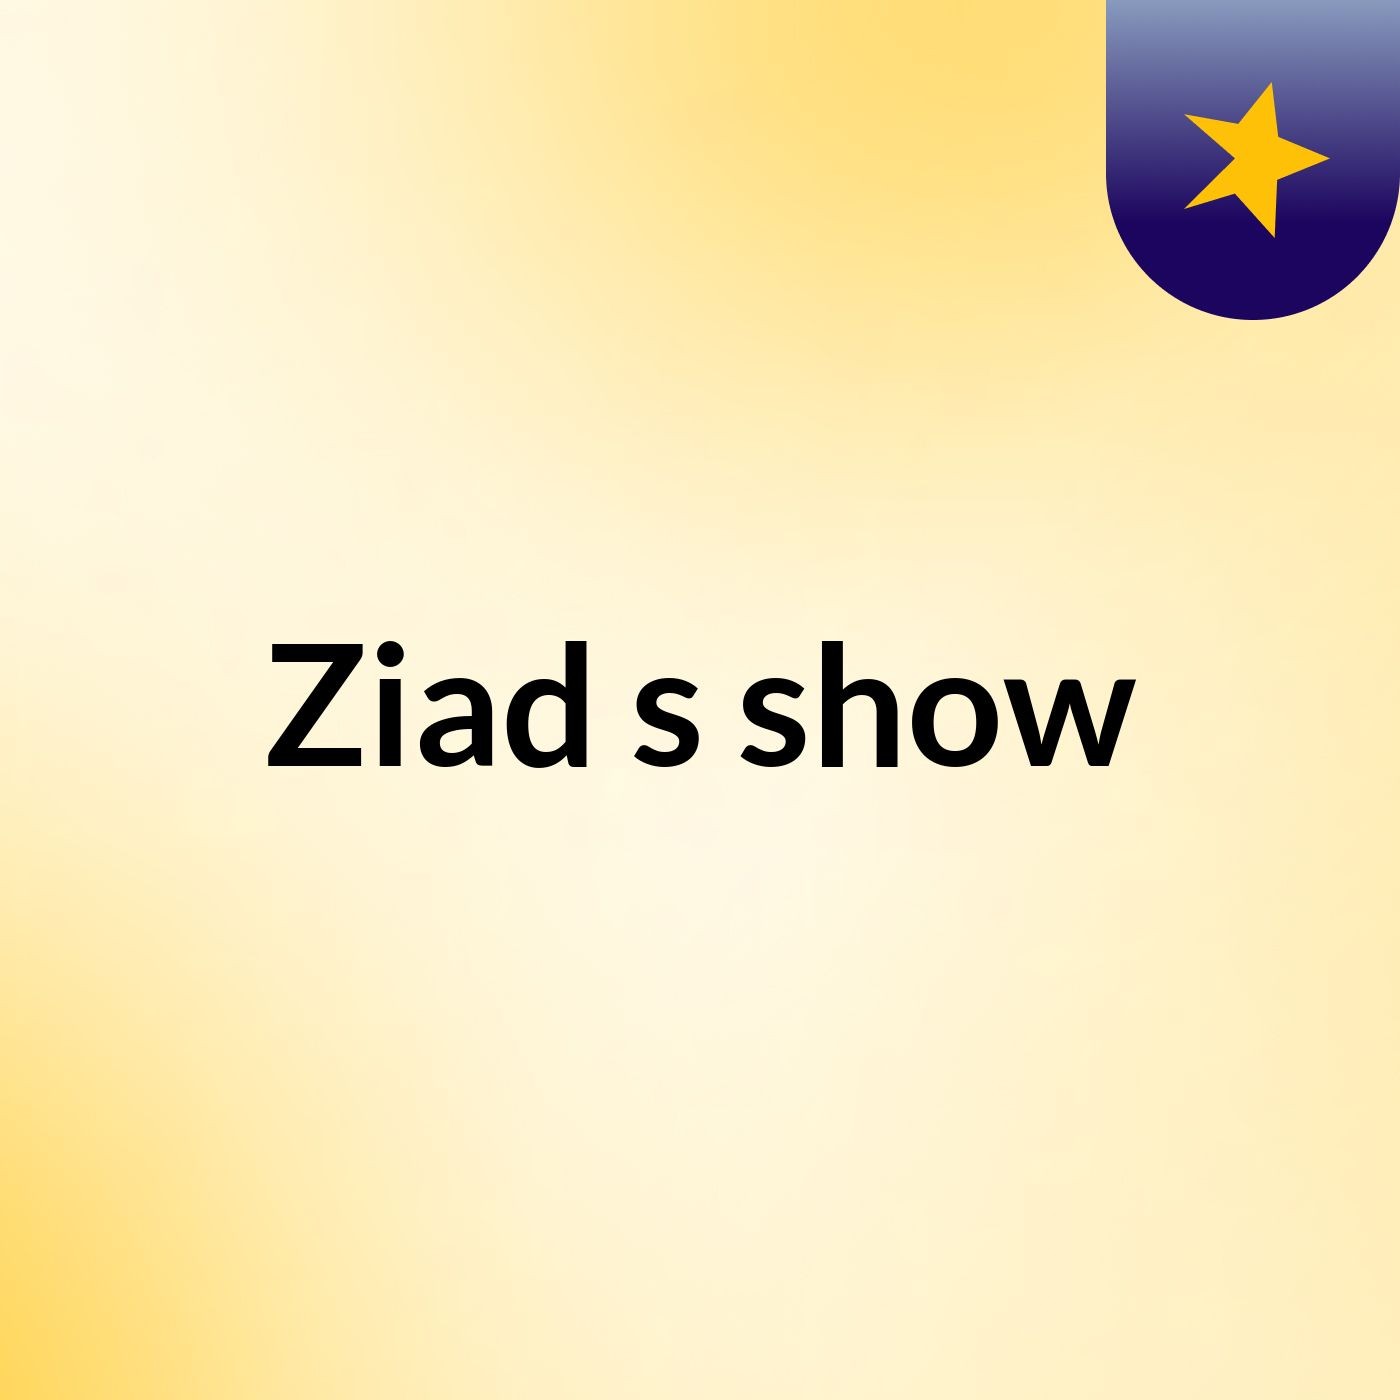 Ziad's show